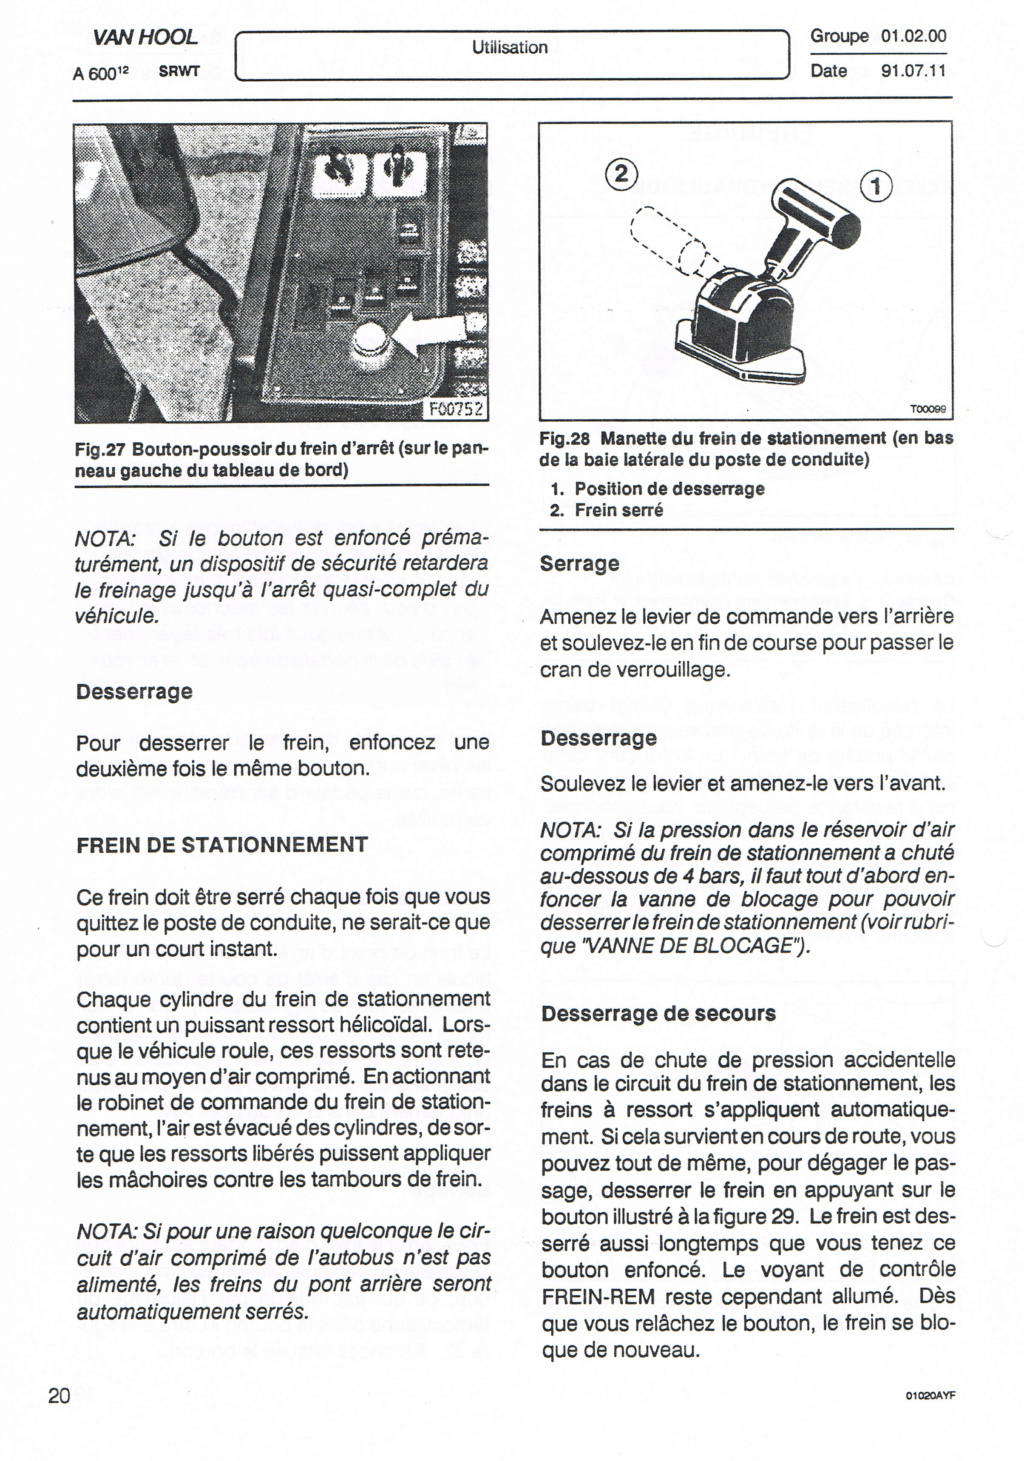 OPERATEUR DE TRANSPORT DE WALLONIE  OTW - Page 3 Ccf23144